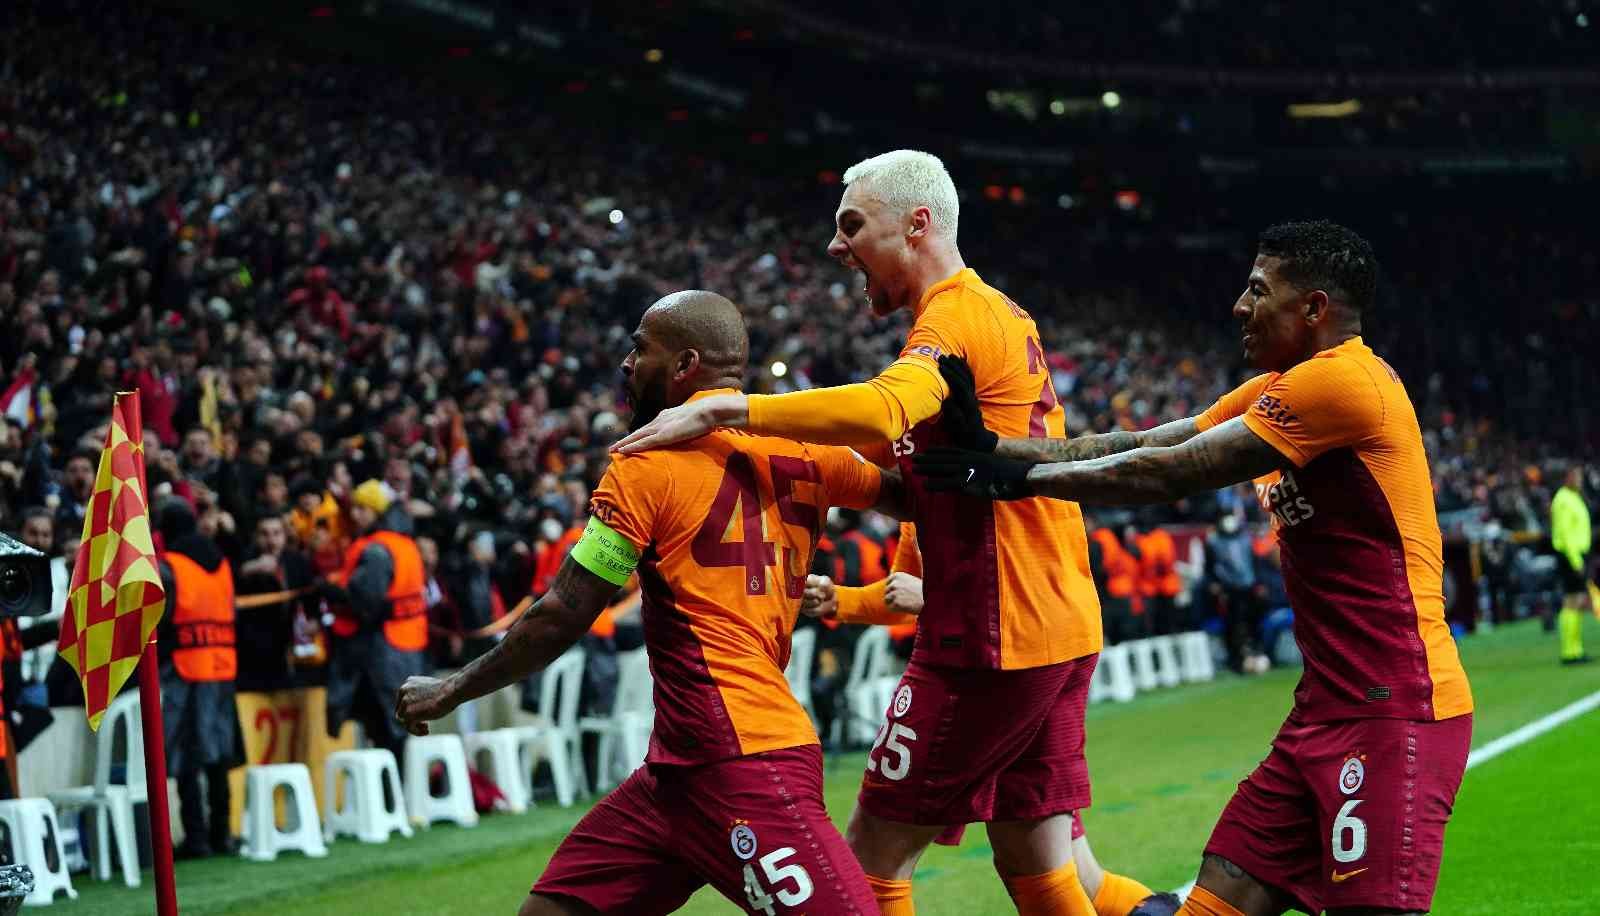 UEFA Avrupa Ligi Son 16 Turu ikinci maçında Galatasaray, Barcelona’yı ağırlıyor. Müsabakanın ilk yarısı 1-1’lik beraberlikle tamamlandı. Maçtan ...